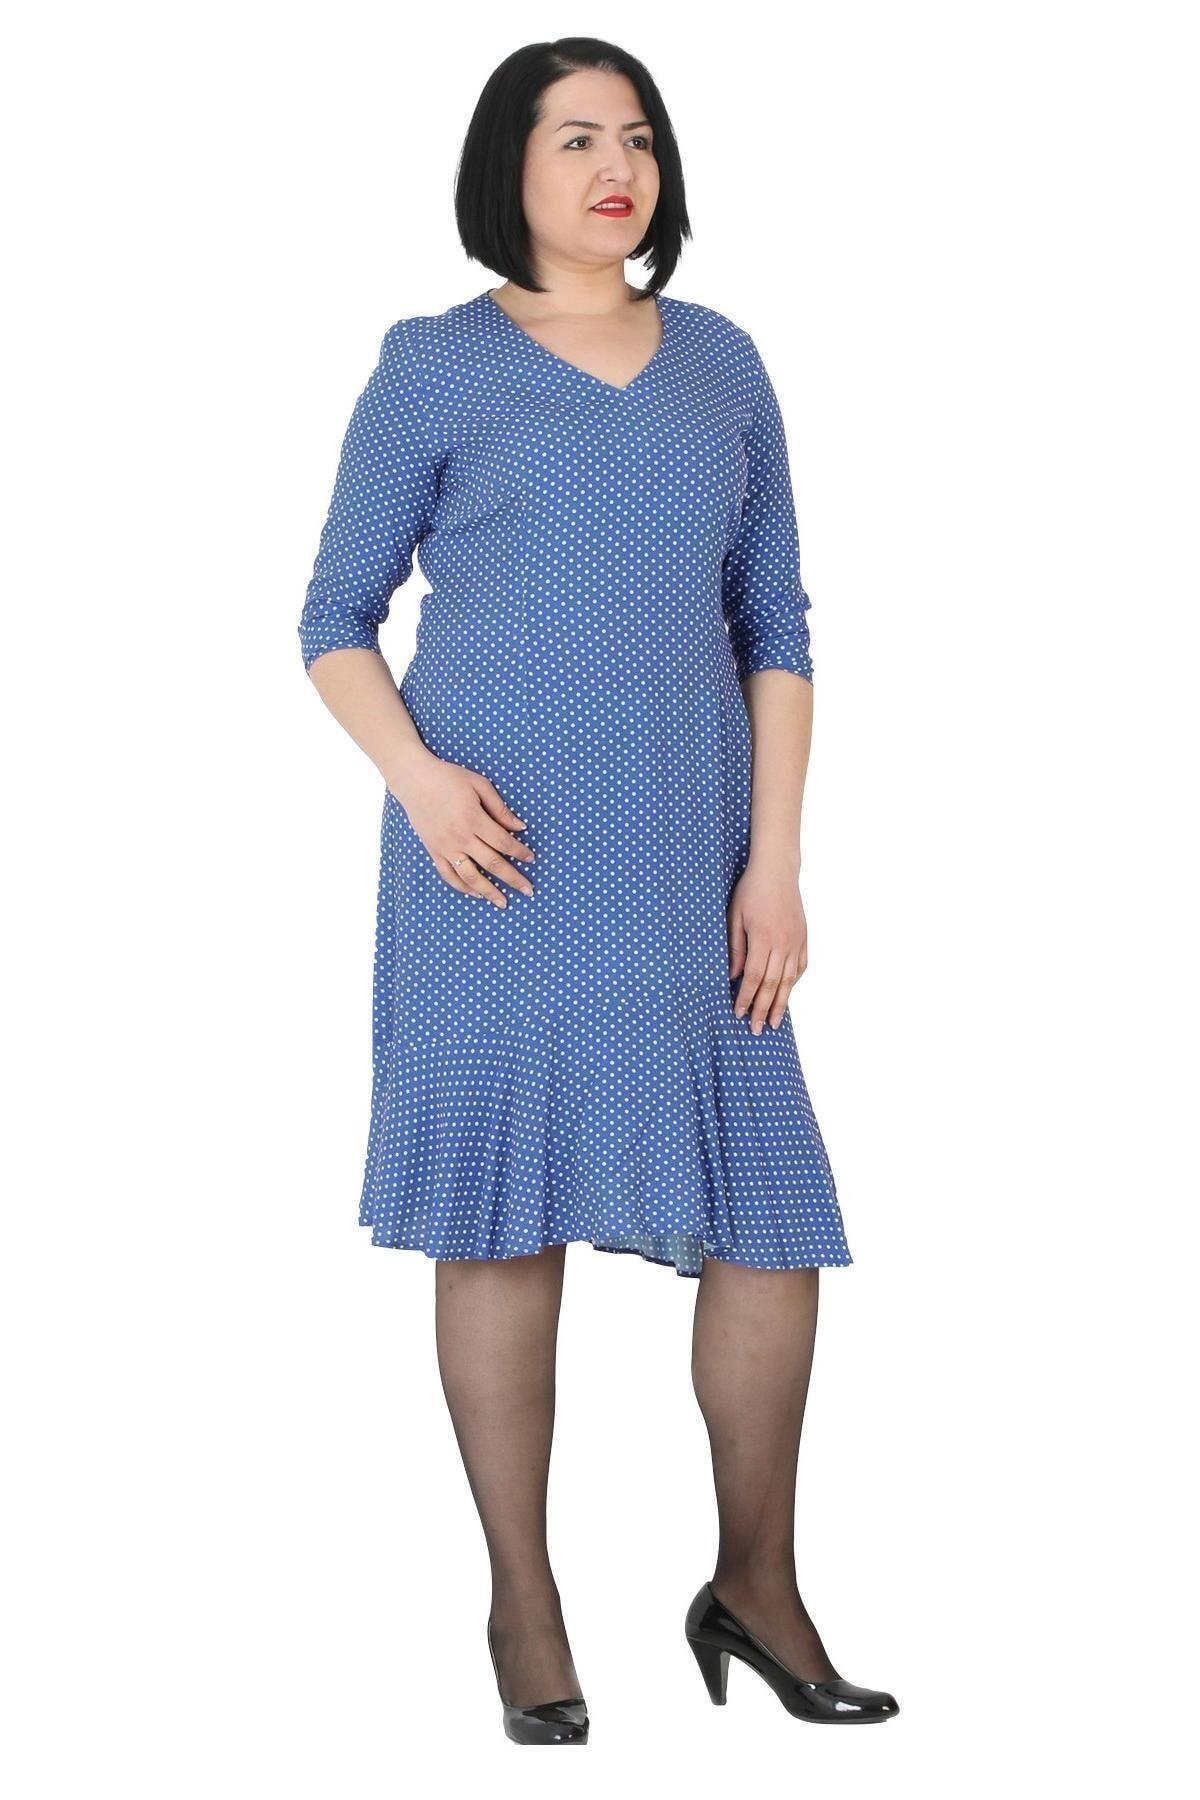 FİERTE Kadın Büyük Beden Elbise Ccçiçil V Yaka Truvakar Kol Volan Etek Puantiye Spor Diz Altı Mavi